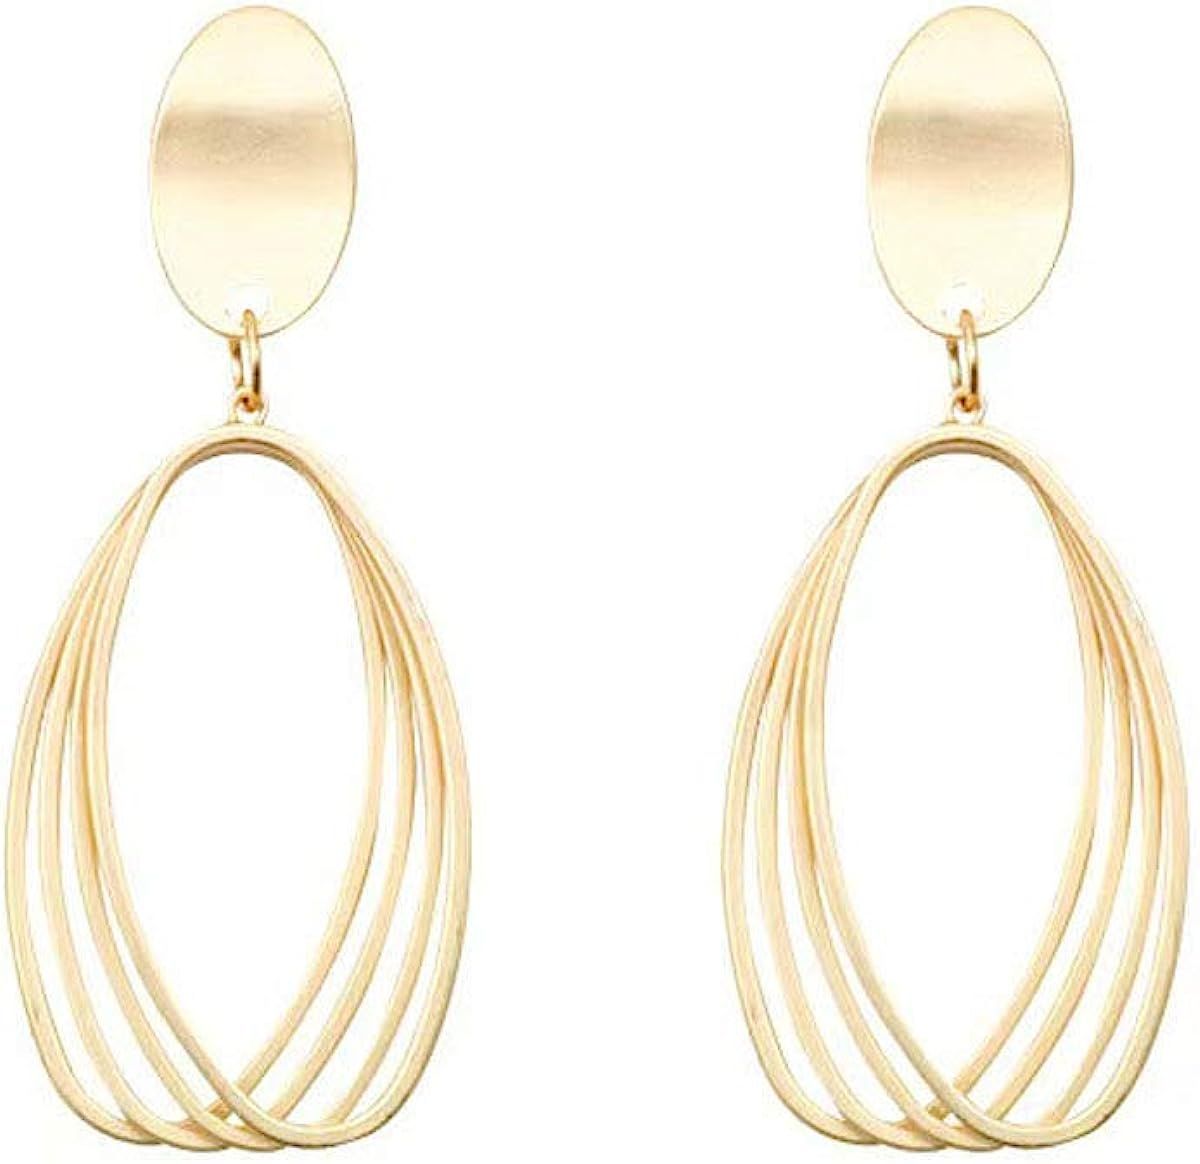 Lightweight Dangle Earrings Statement Earrings Gold Teardrop Earrings for Women | Amazon (US)